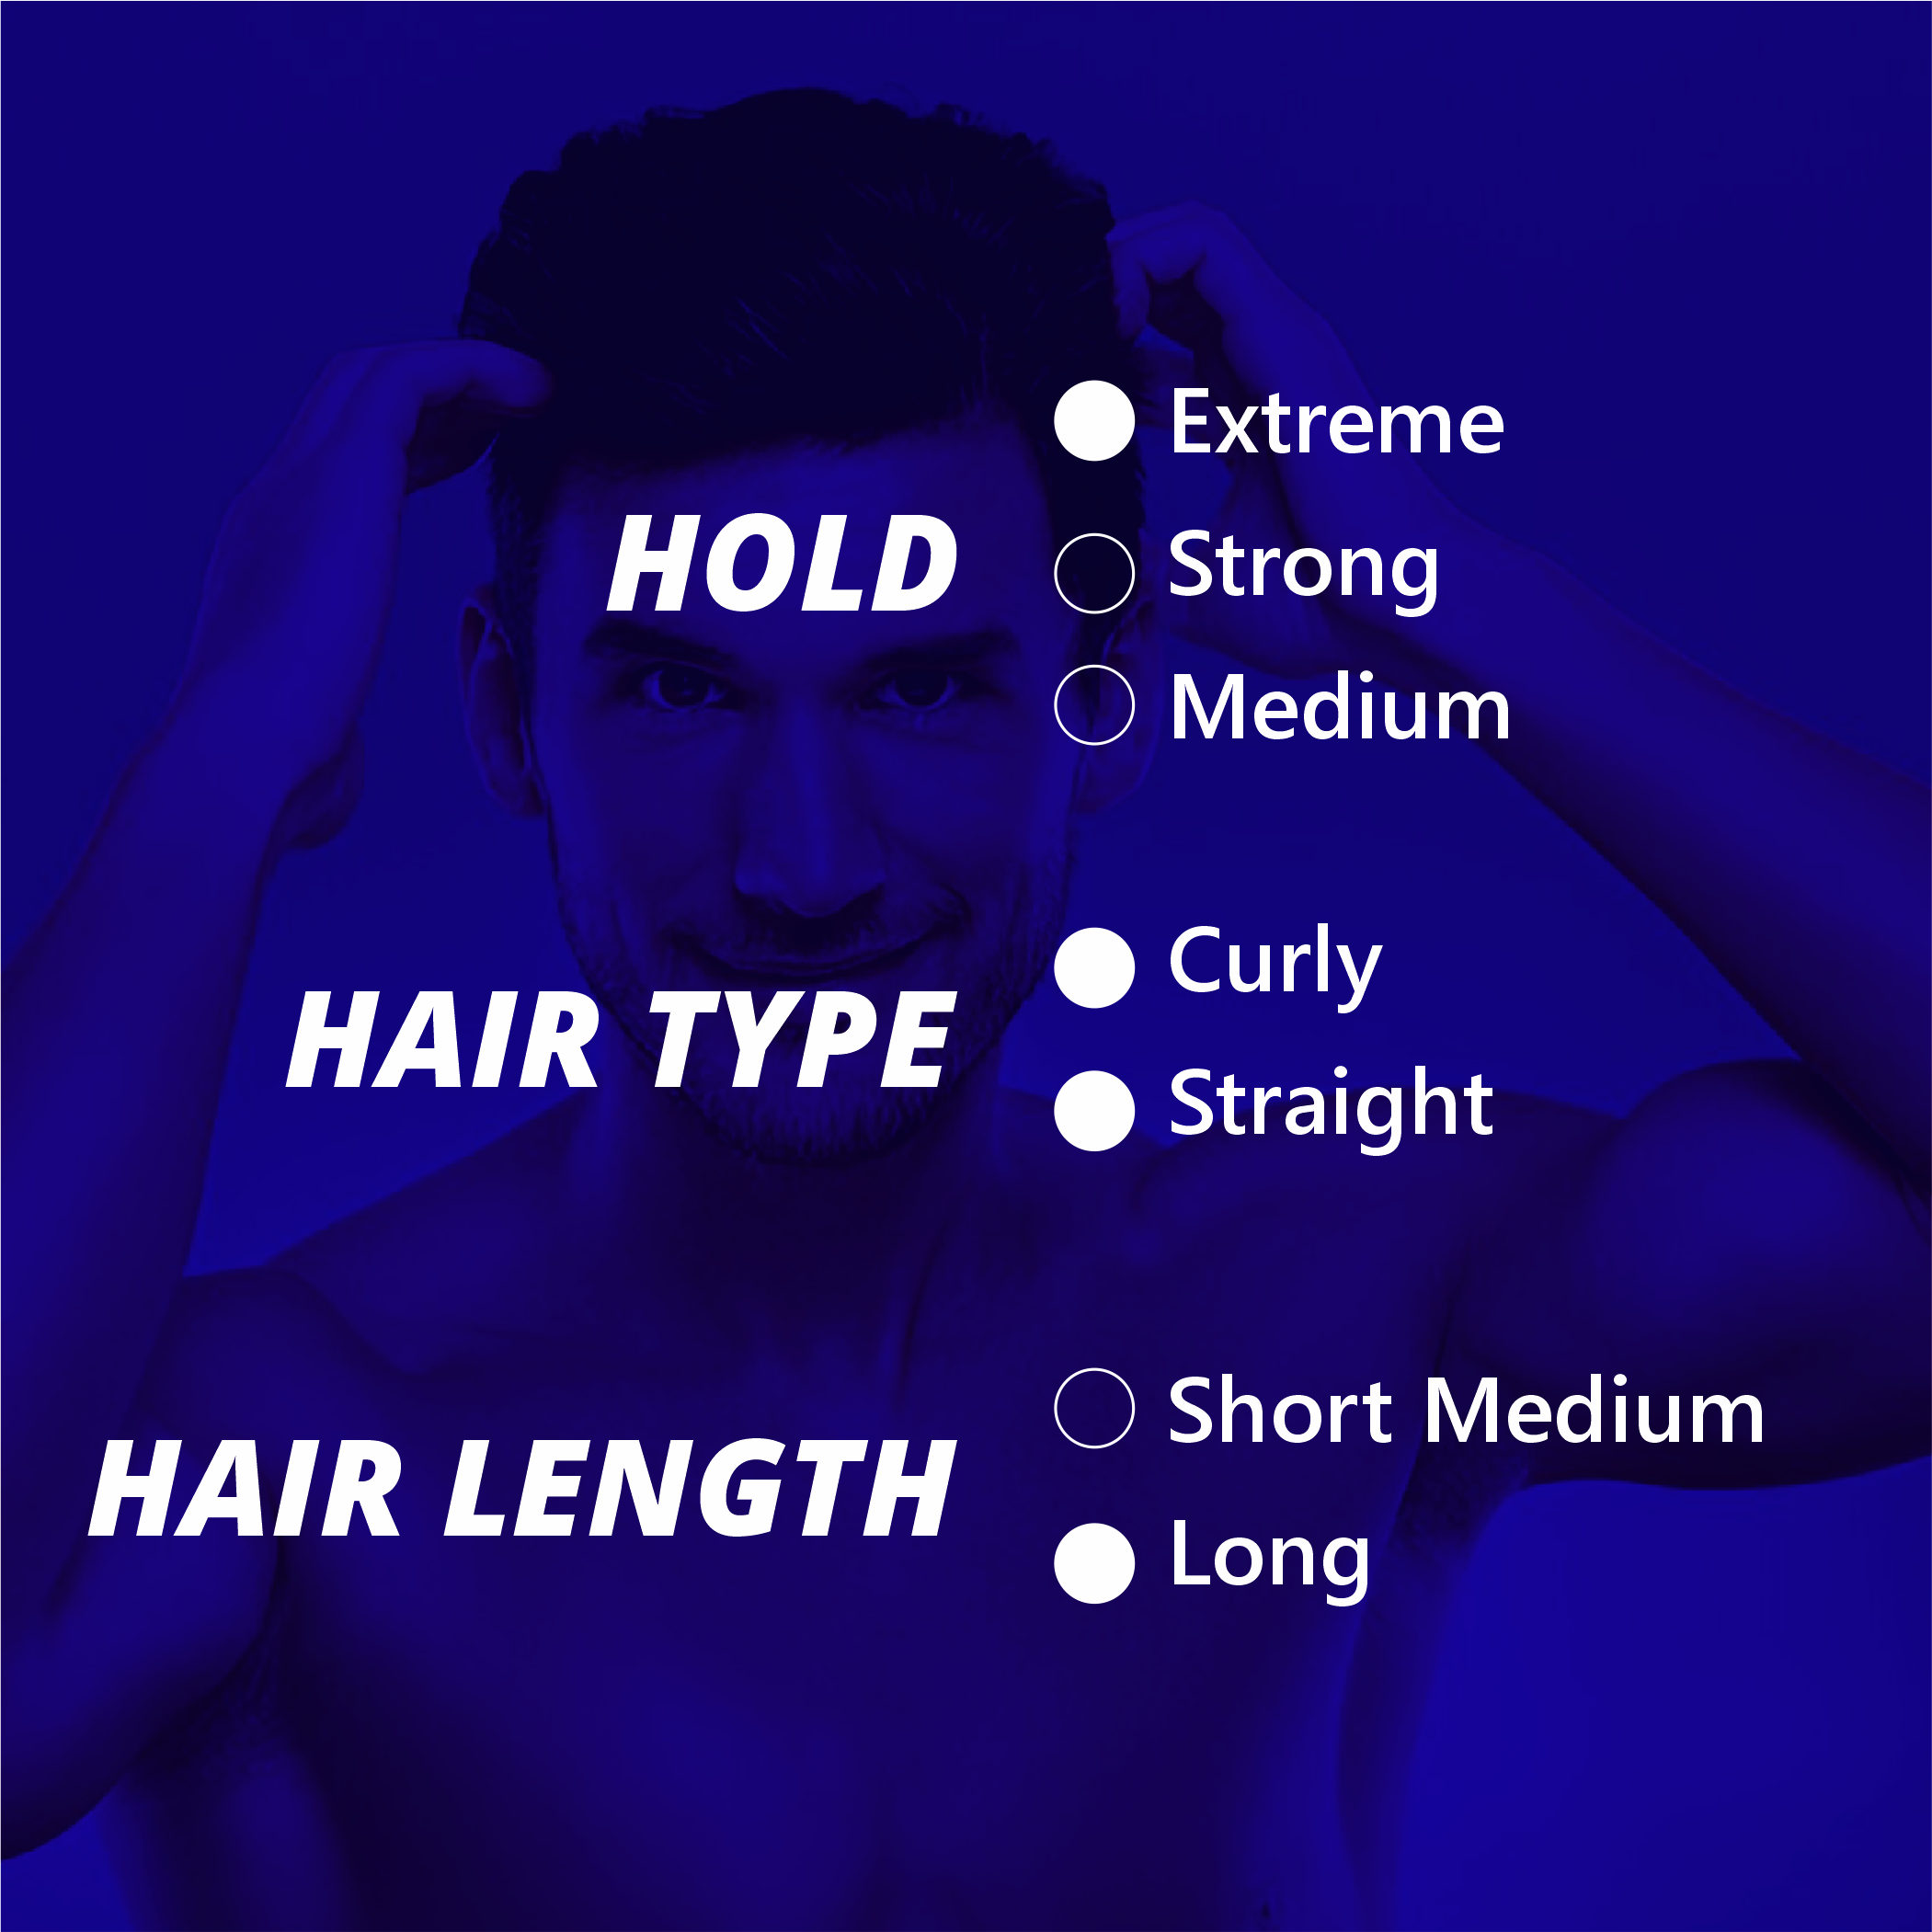 why choose estilo hair styling sprey